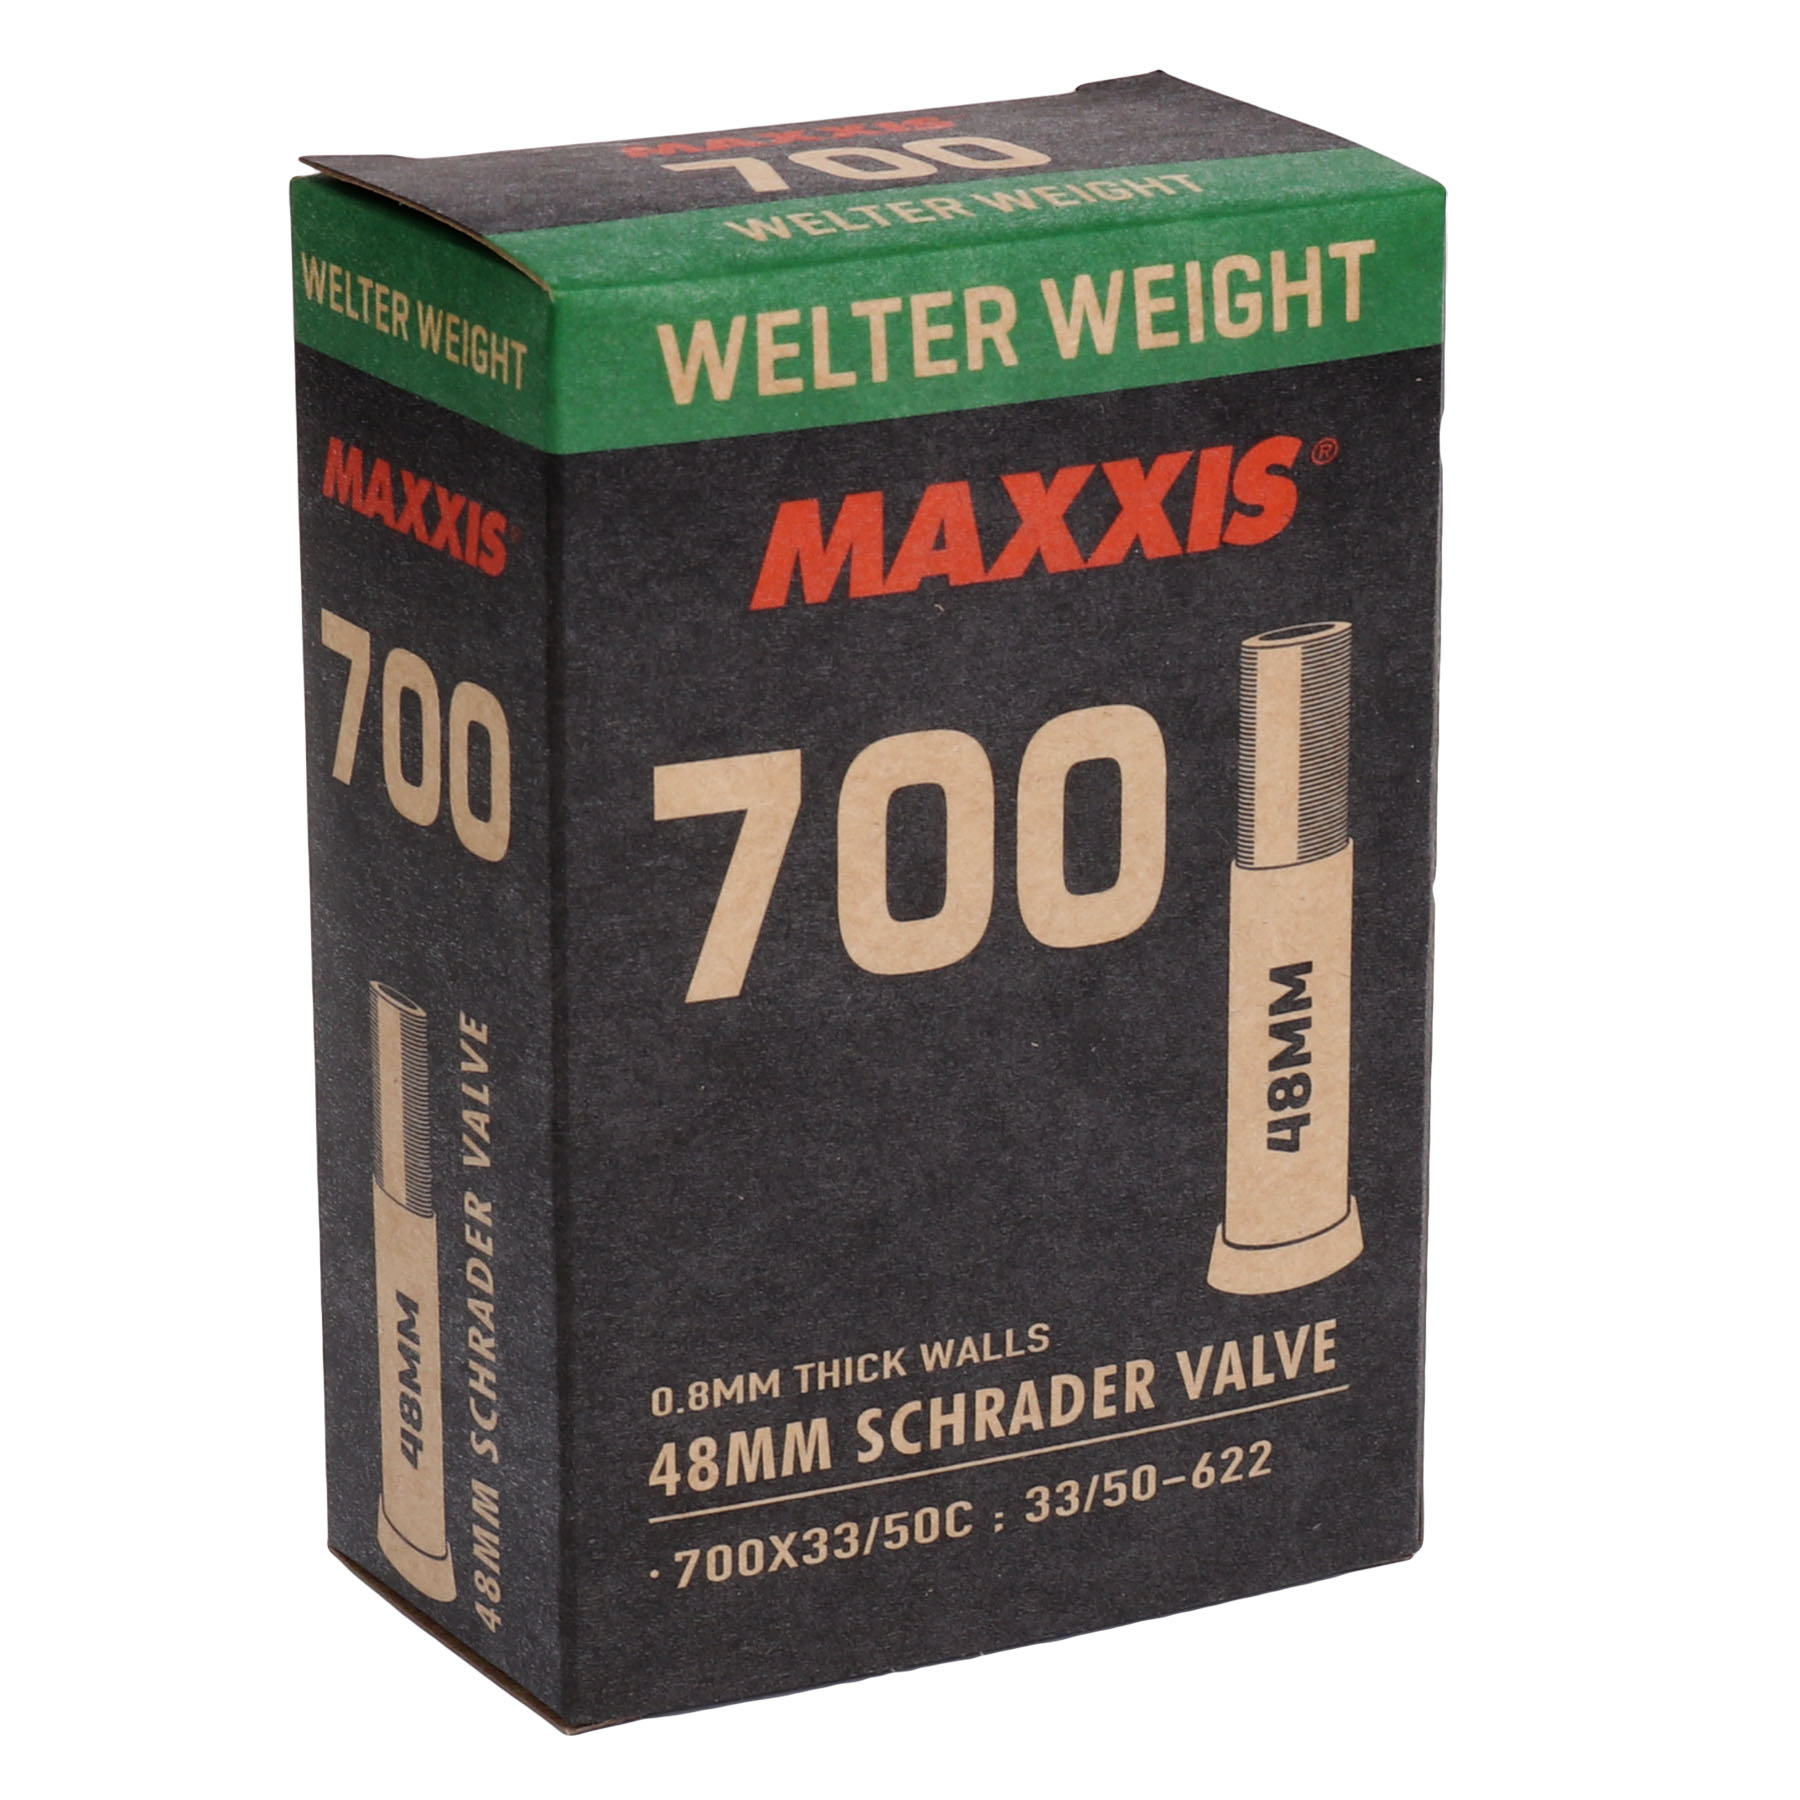 Produktbild von Maxxis WelterWeight Schlauch - 33/50-622 - Schrader - 48mm